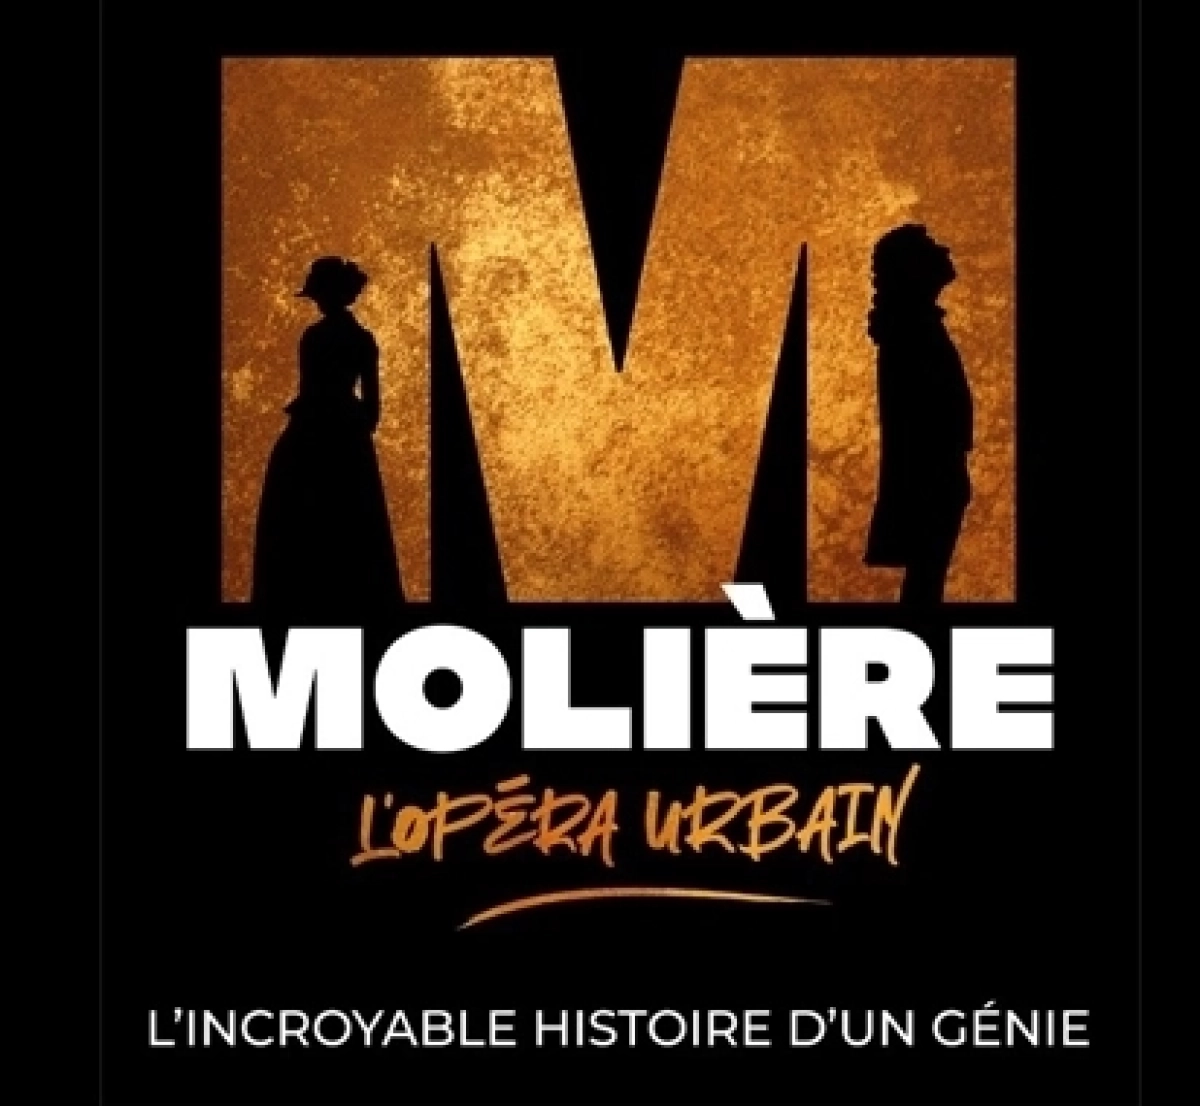 Billets Moliere L'opera Urbain (Zenith Caen - Caen)